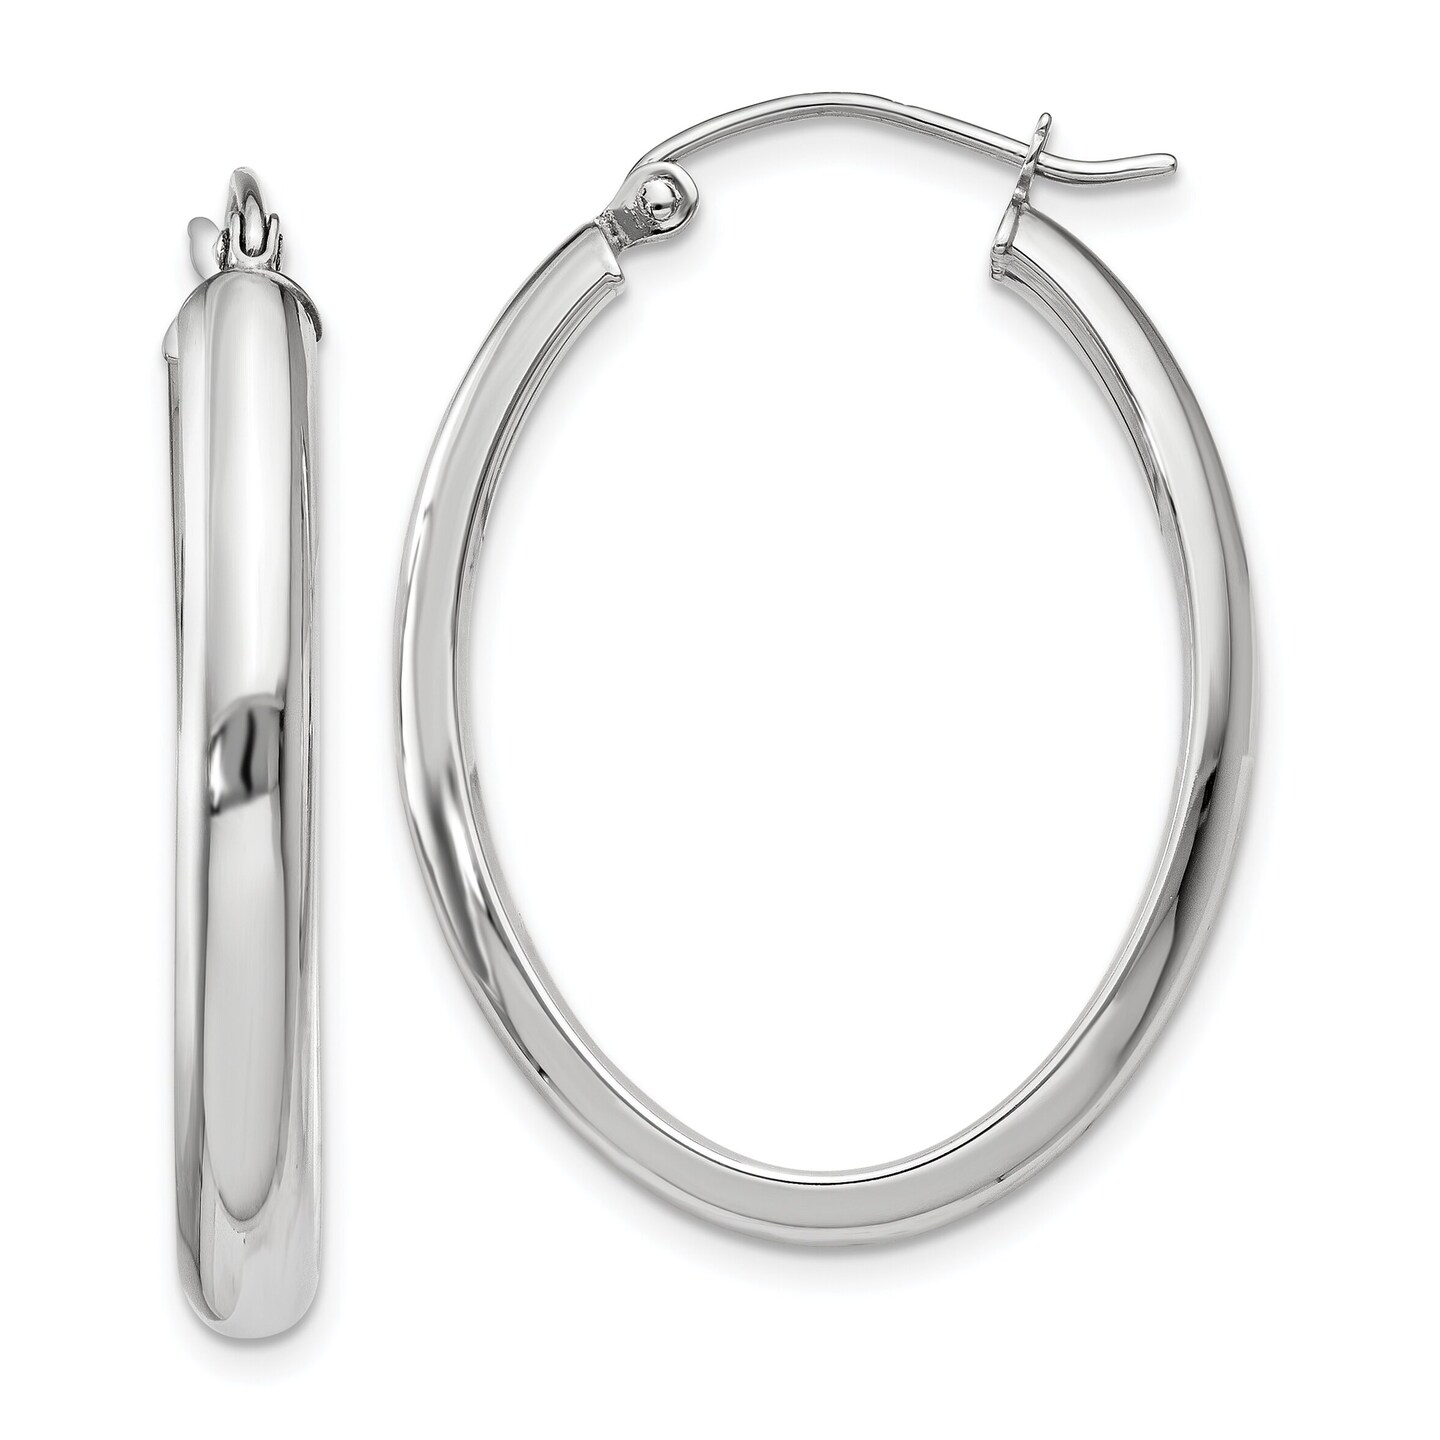 14K White Gold Oval Tube Hoop Earrings Jewelry 32mm x 3.75mm